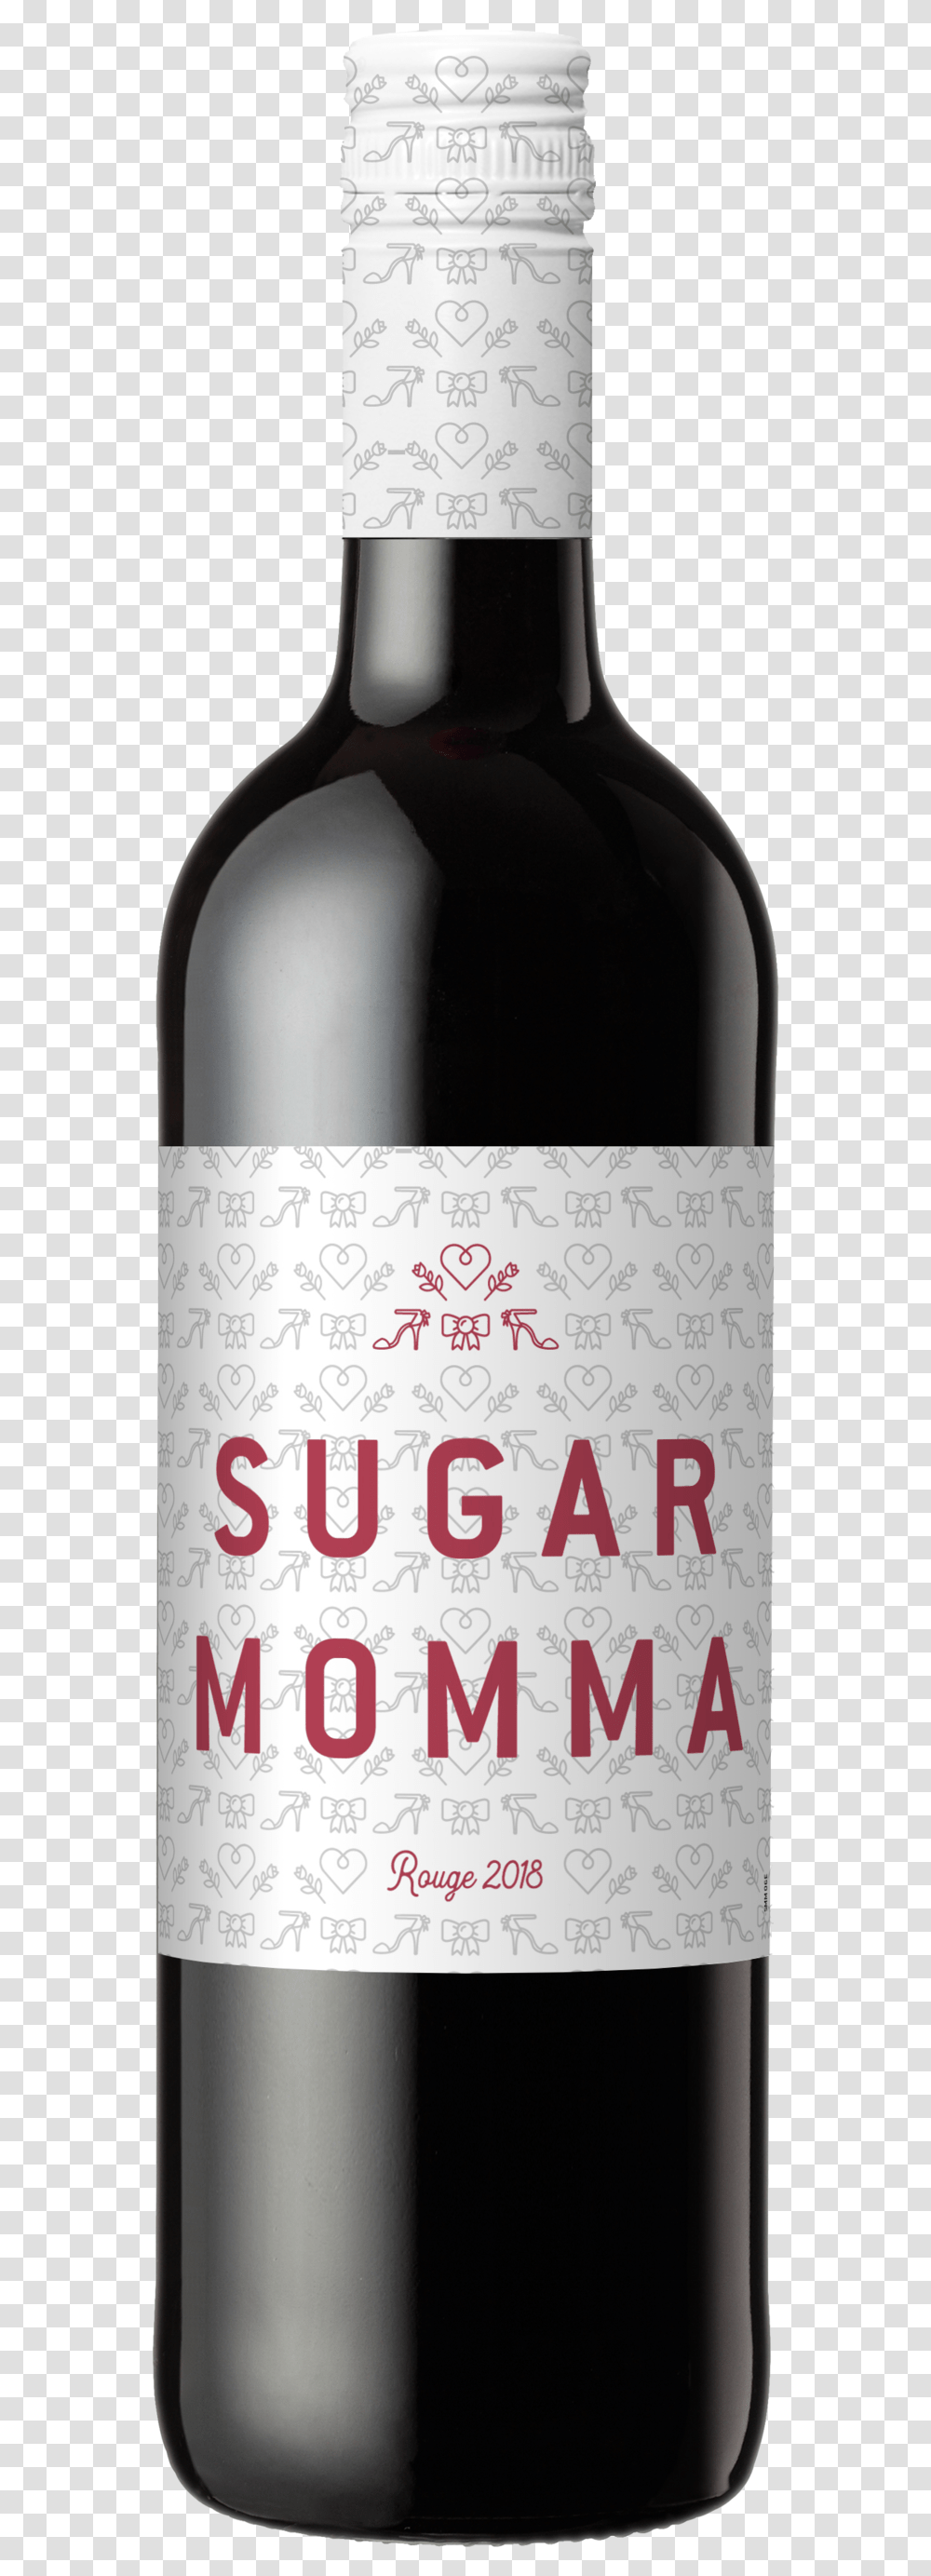 Sugar Momma Bdx Lg Rouge Front Tr Yatir Creek, Alcohol, Beverage, Drink, Wine Transparent Png